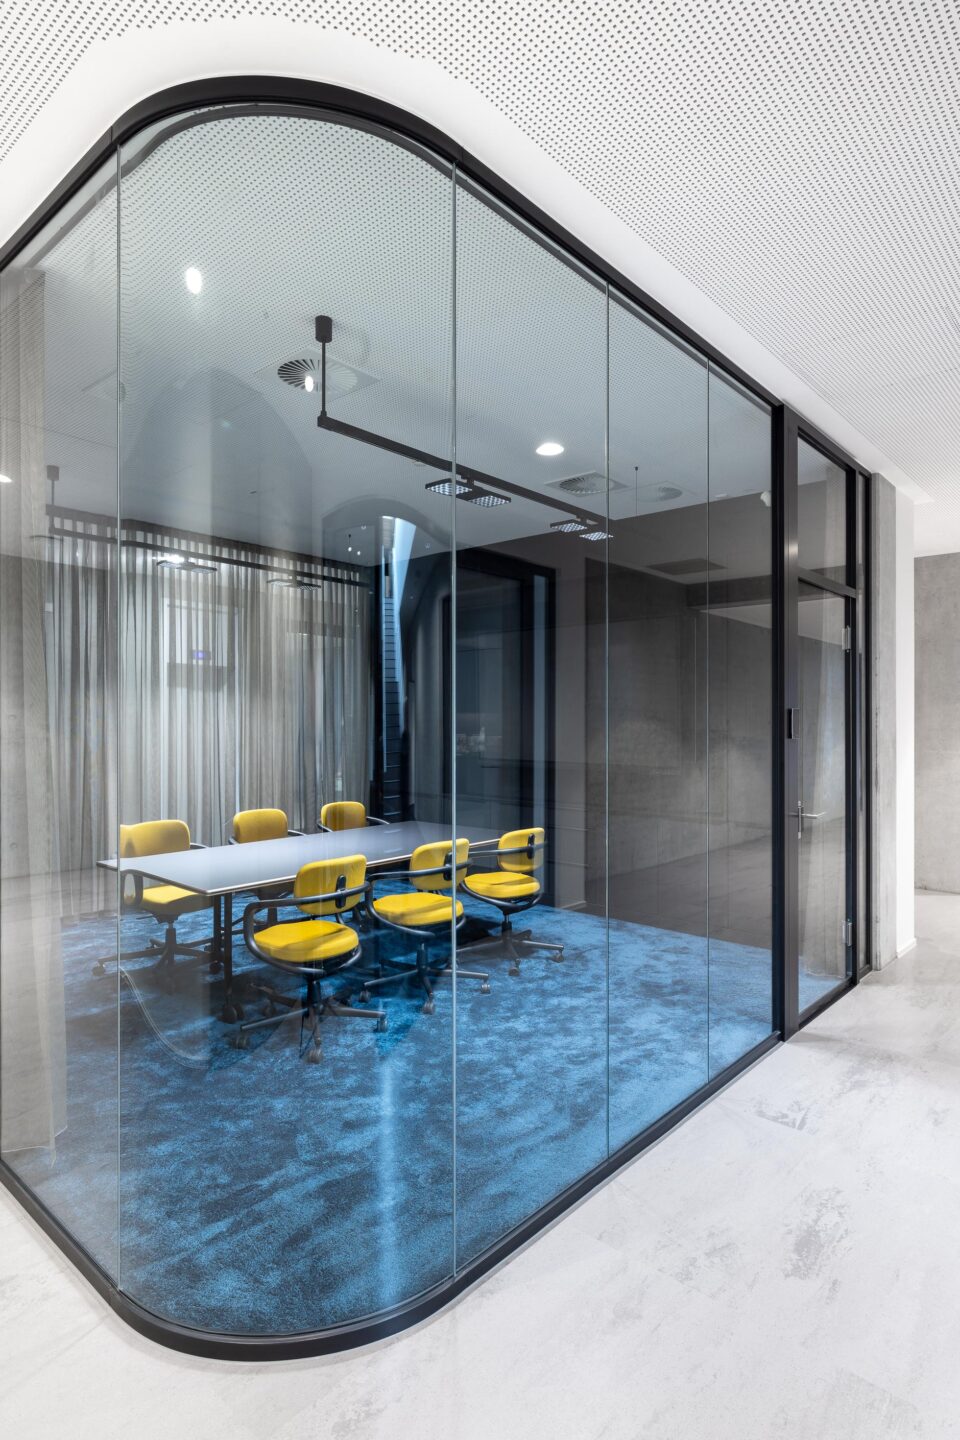 SGP Campus Ulm | Büroraum mit blauem Teppichboden und gelben Stühlen